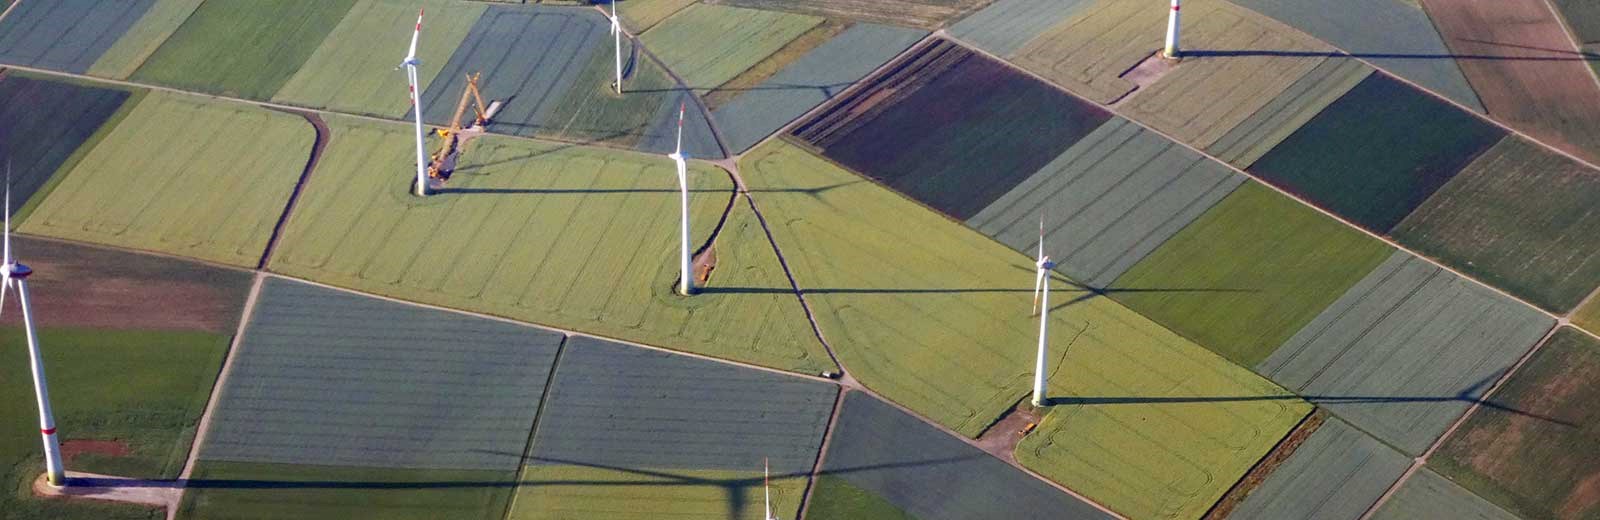 COP26-wind-turbines-Mace